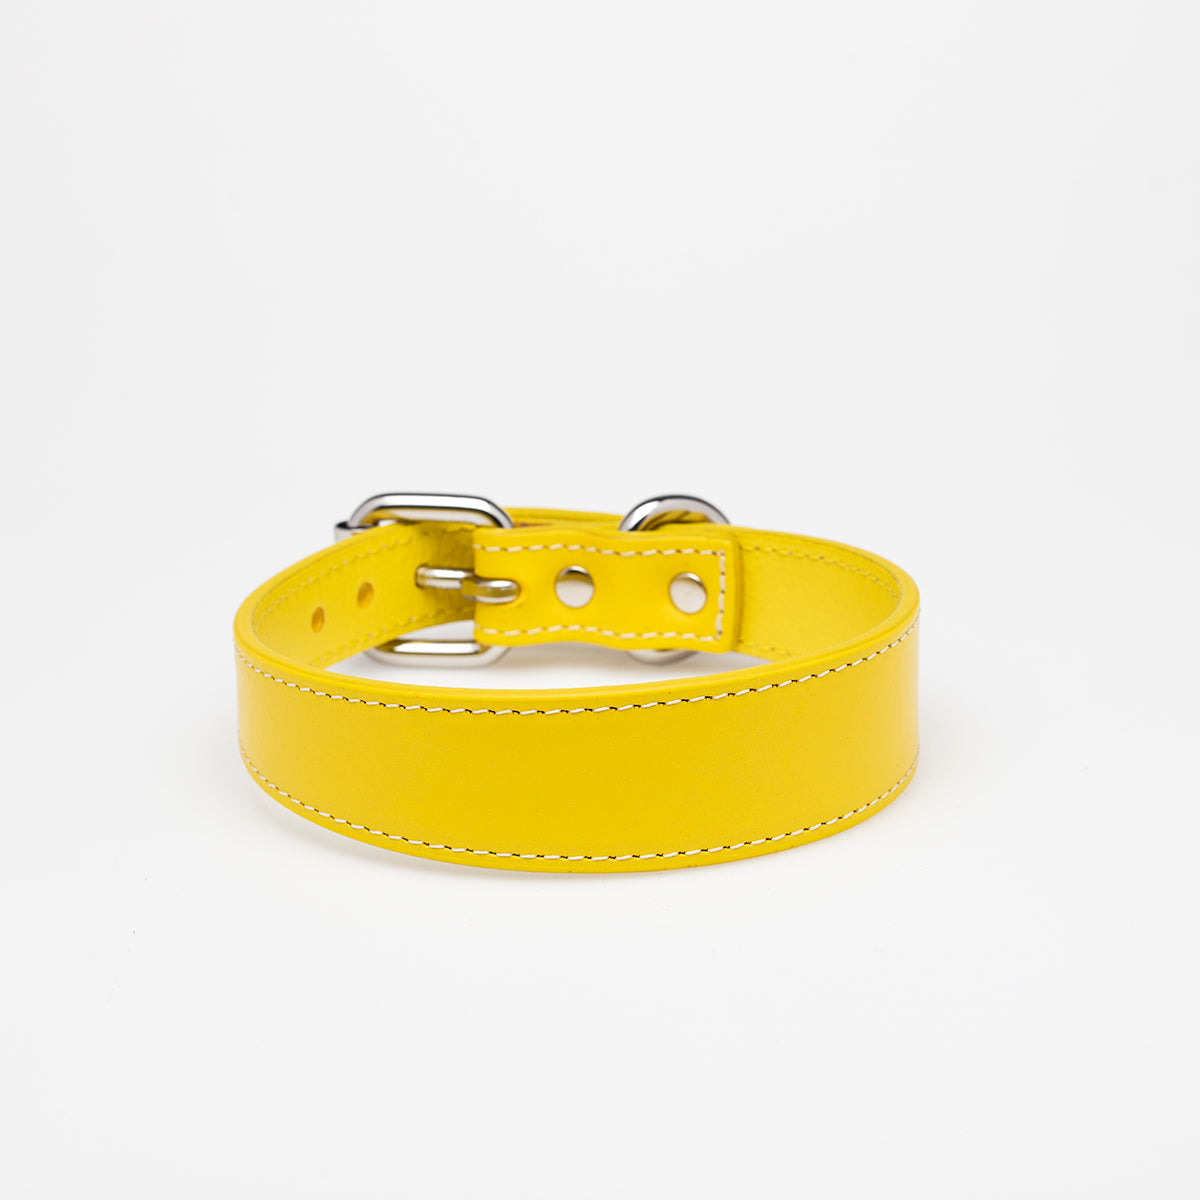 yellow-dog-collar-medium-thin.jpg